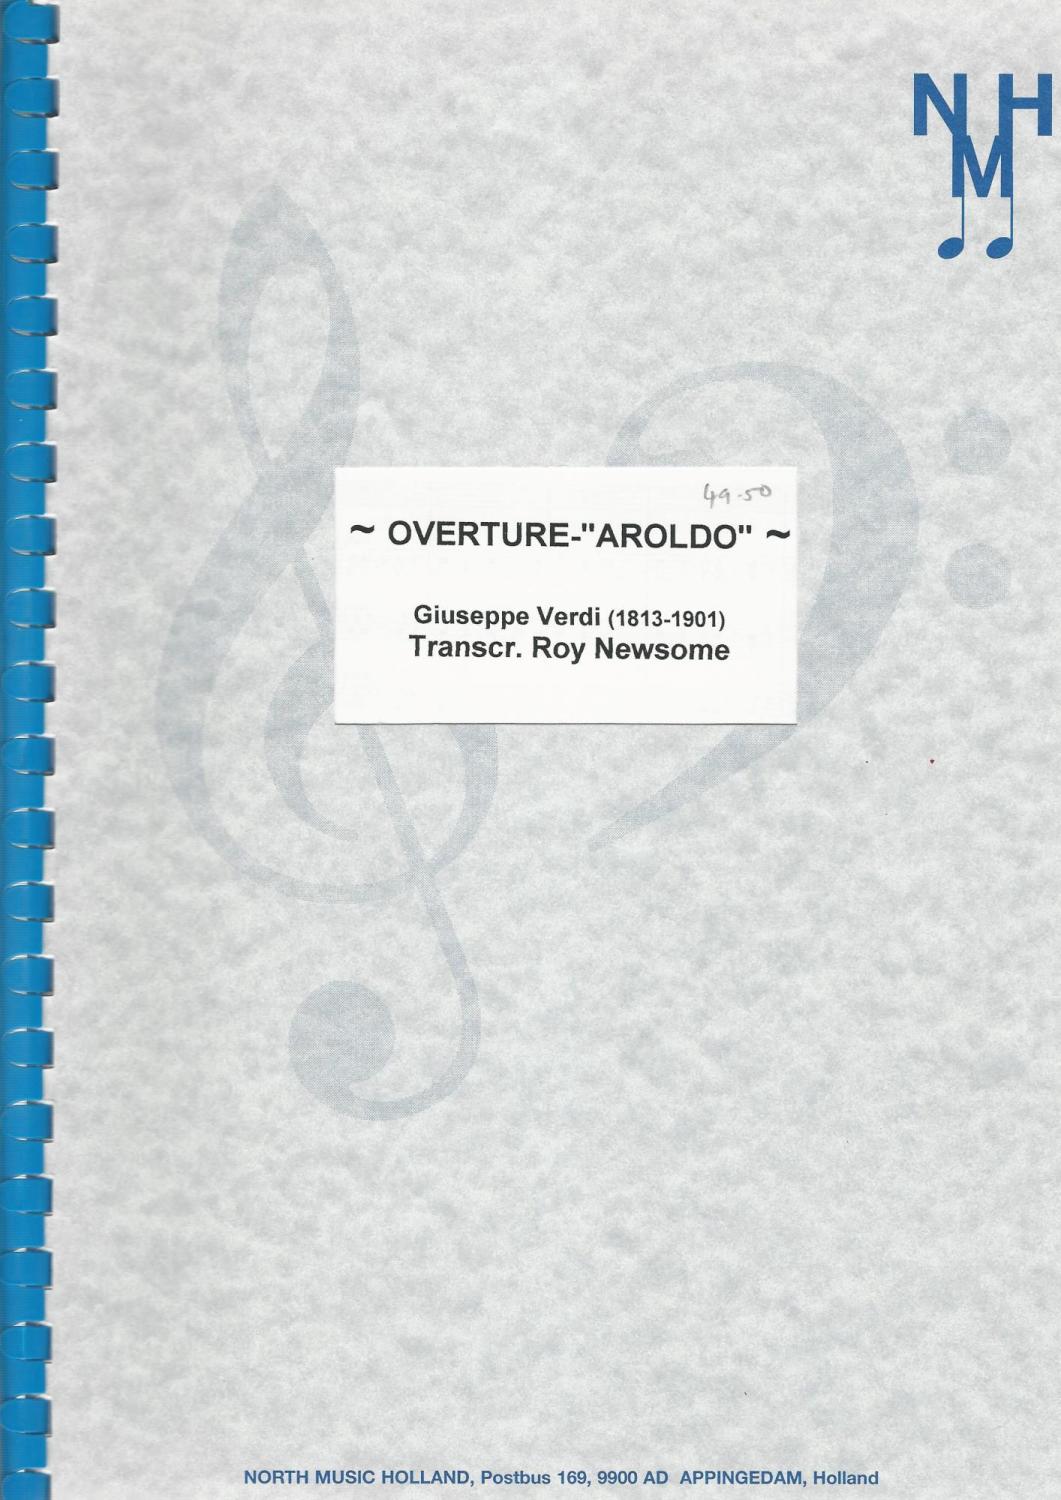 Overture Aroldo for Brass Band - Giuseppe Verdi, Transcr.  Roy Newsome